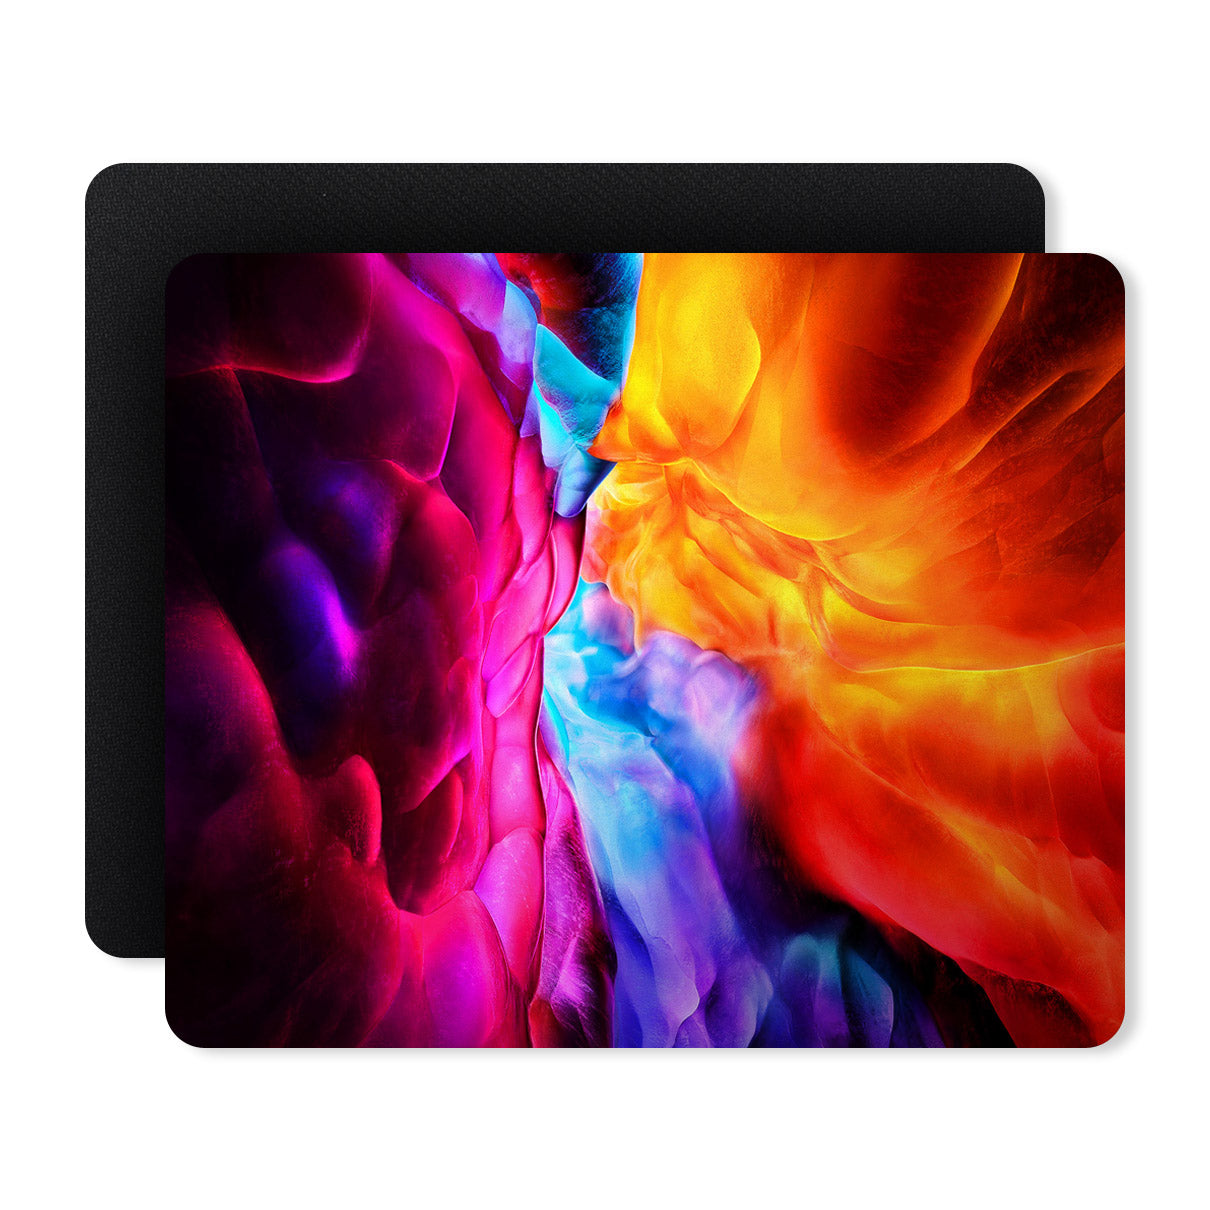 Smoke Colors Designer Printed Premium Mouse pad (9 in x 7.5 in)